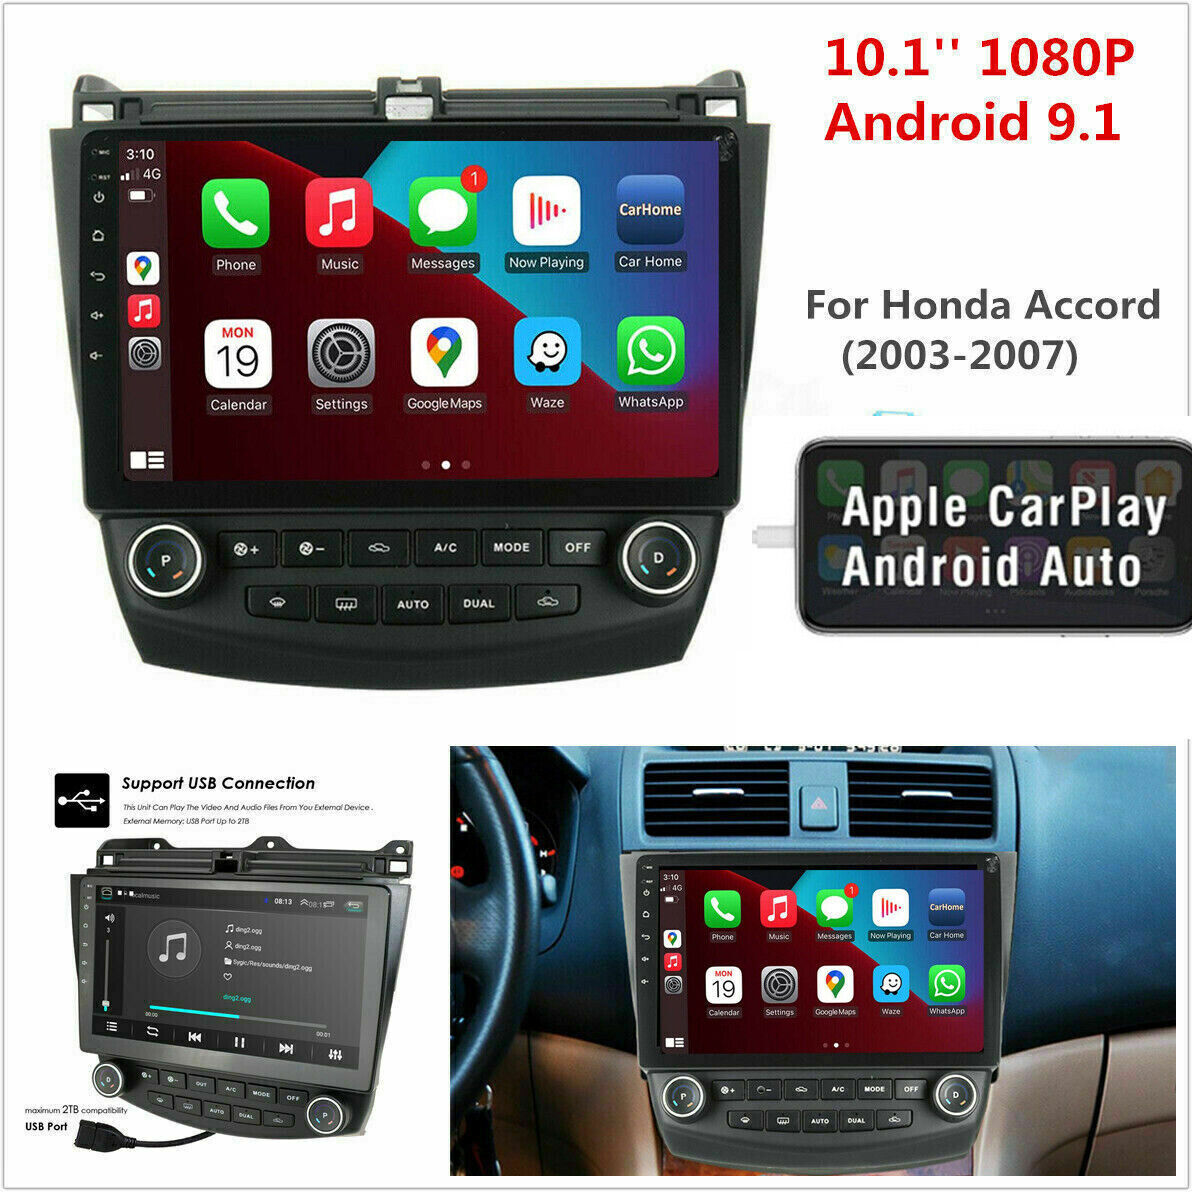 10.1" Apple Android Auto Carplay Car Radio Gps Stereo For 2003-2007 Honda Accord